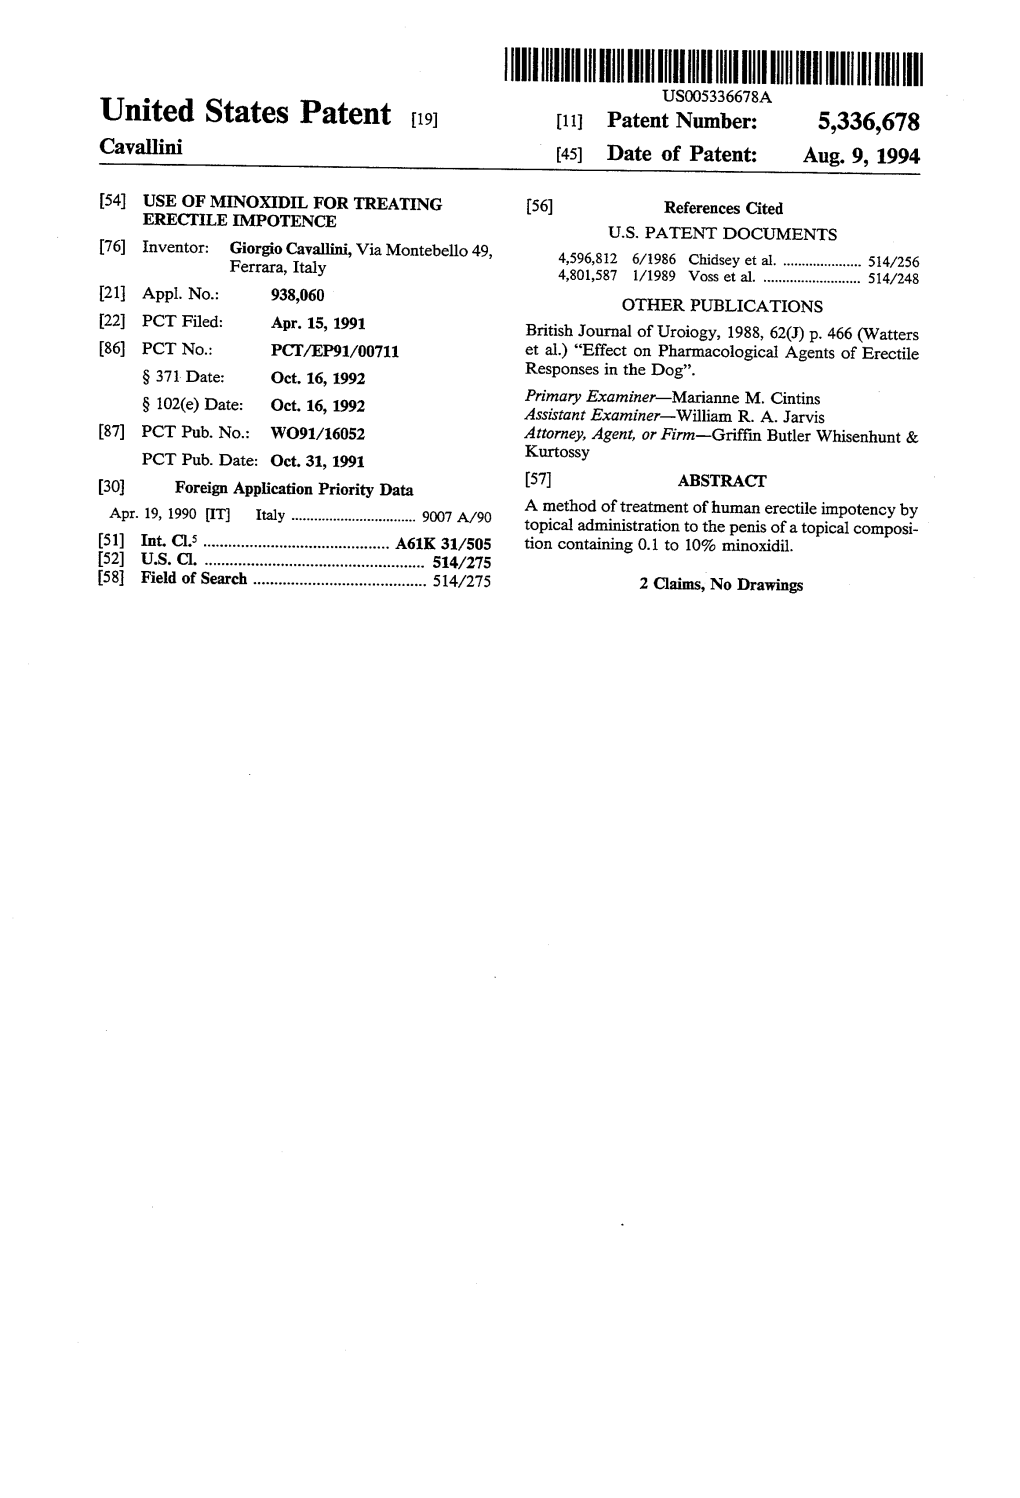 United States Patent 19 11 Patent Number: 5,336,678 Cavallini 45) Date of Patent: Aug